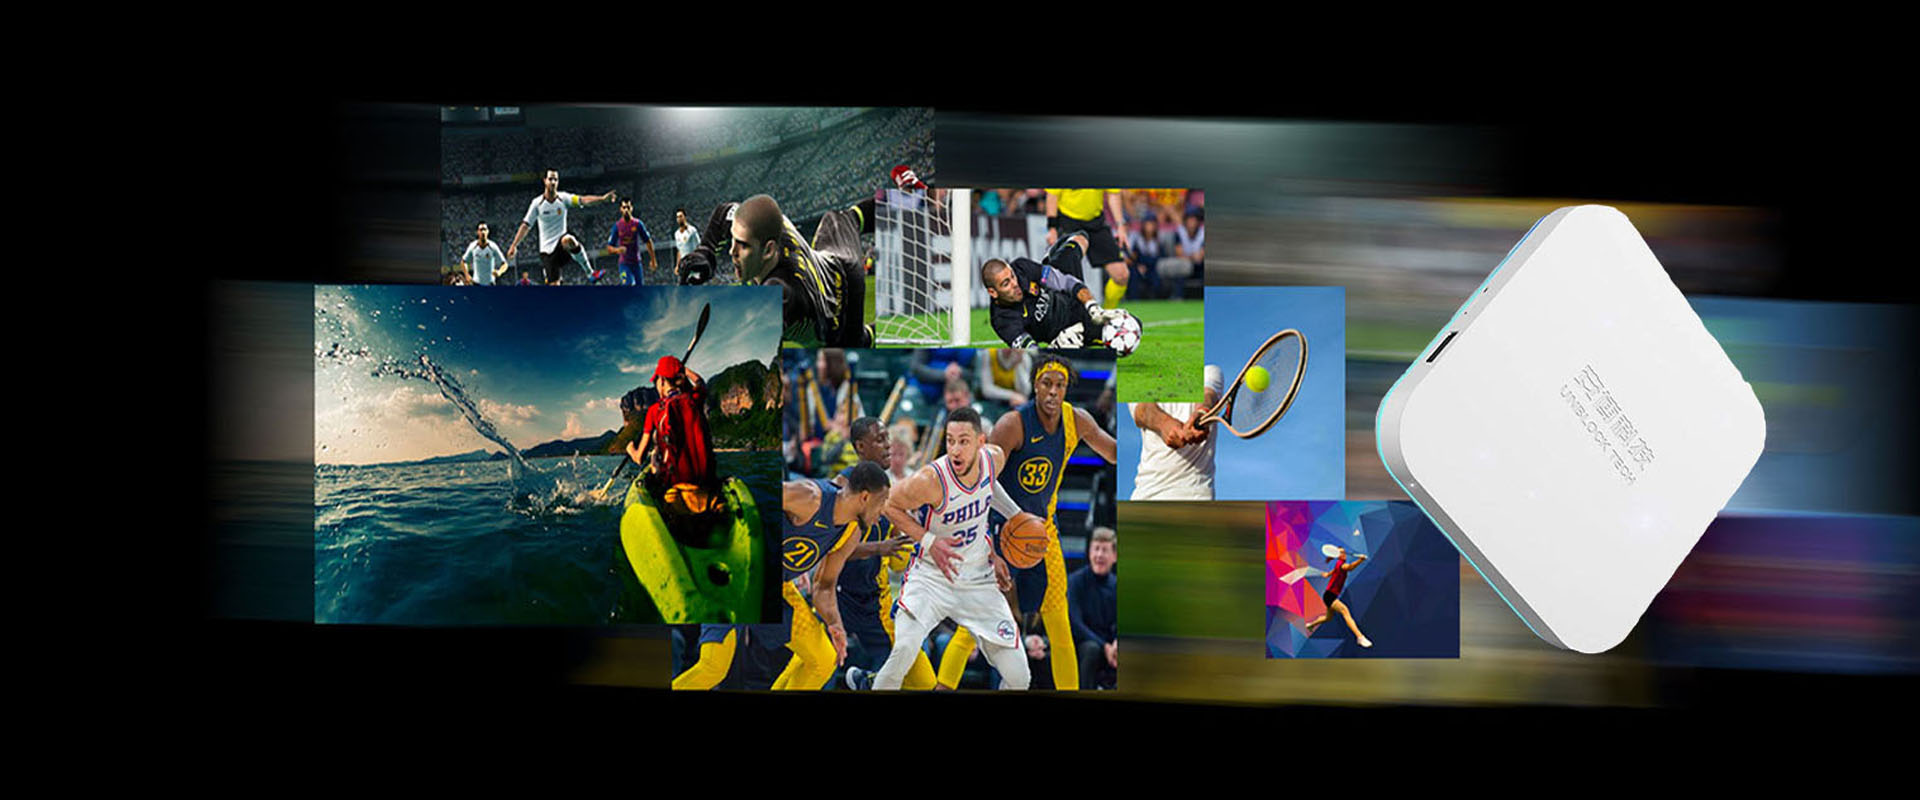 UNBLOCK TECH UBOX8 - Kotak TV Olahraga Disesuaikan Untuk Penggemar Olahraga